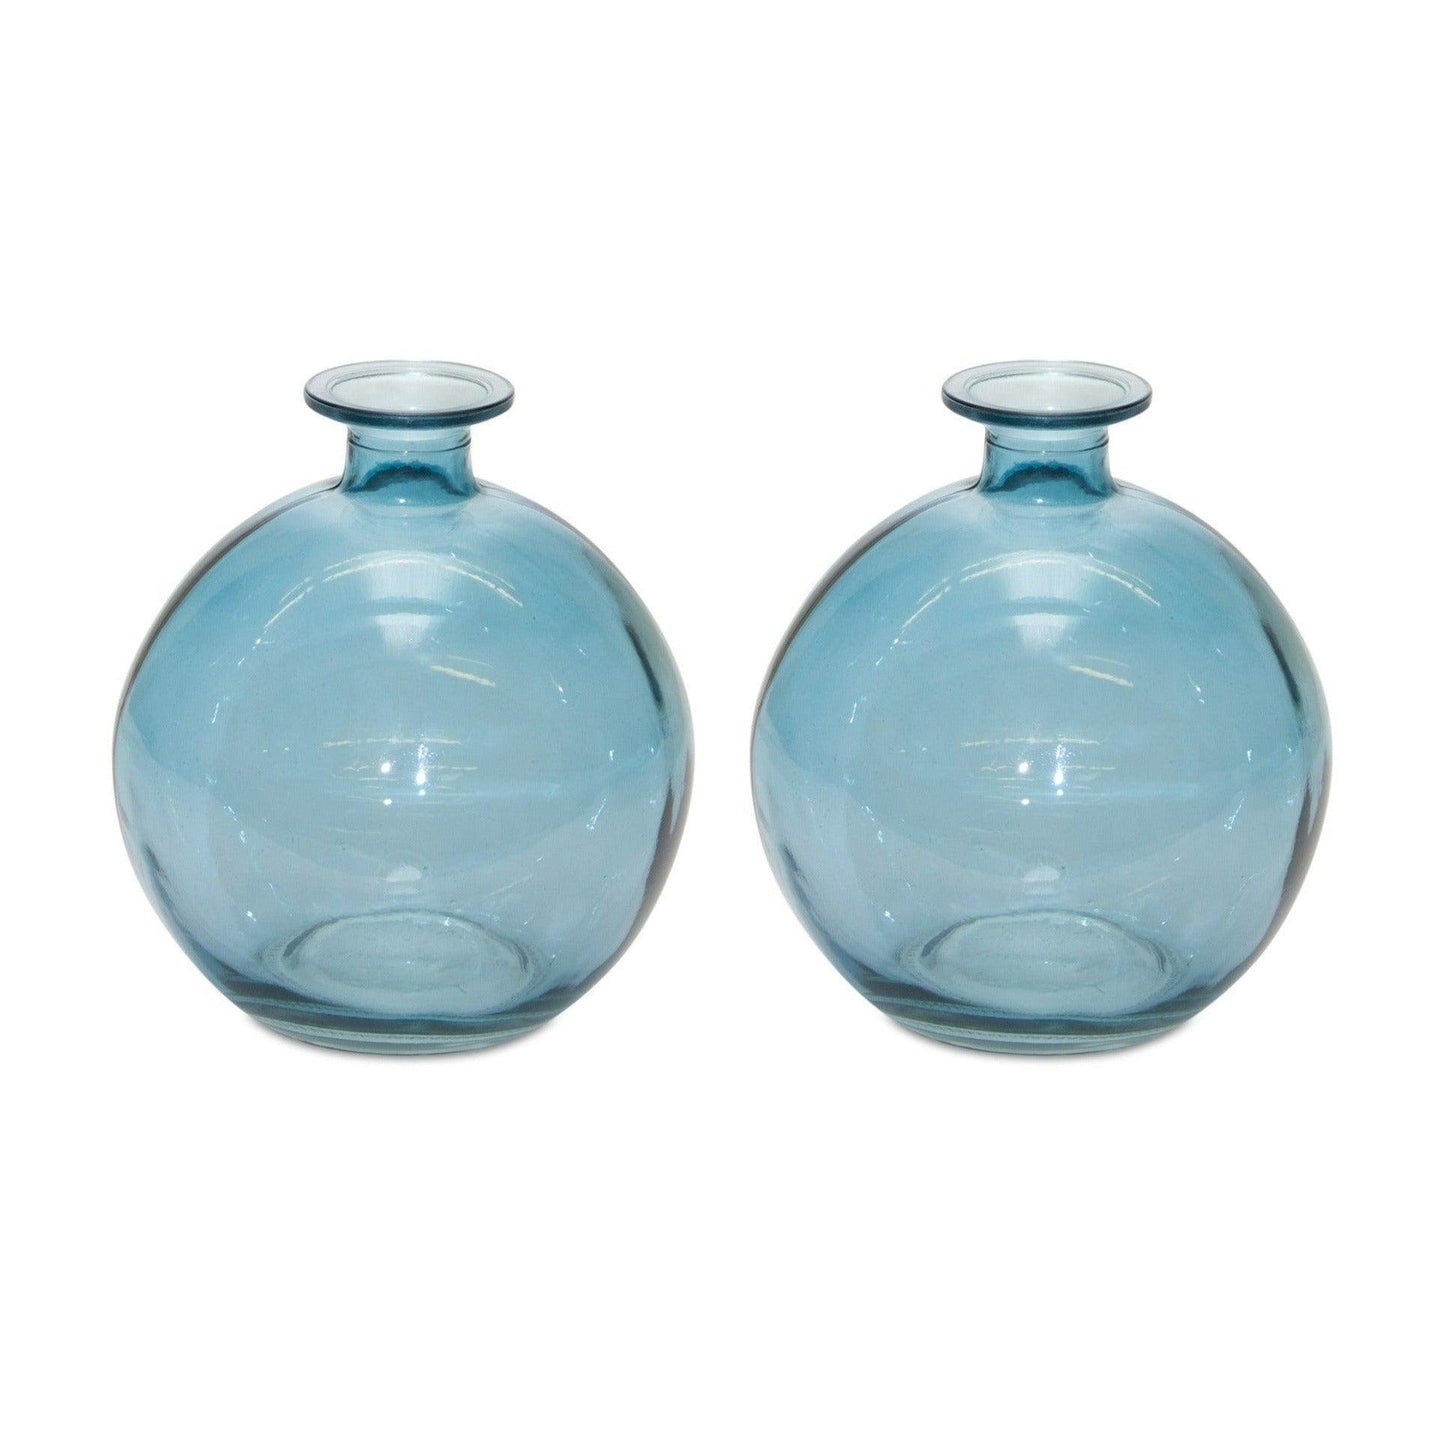 Blue Glass Table Vases Set of 2 - 6" Round Blue Mini Vases - Surfside Chic Decor